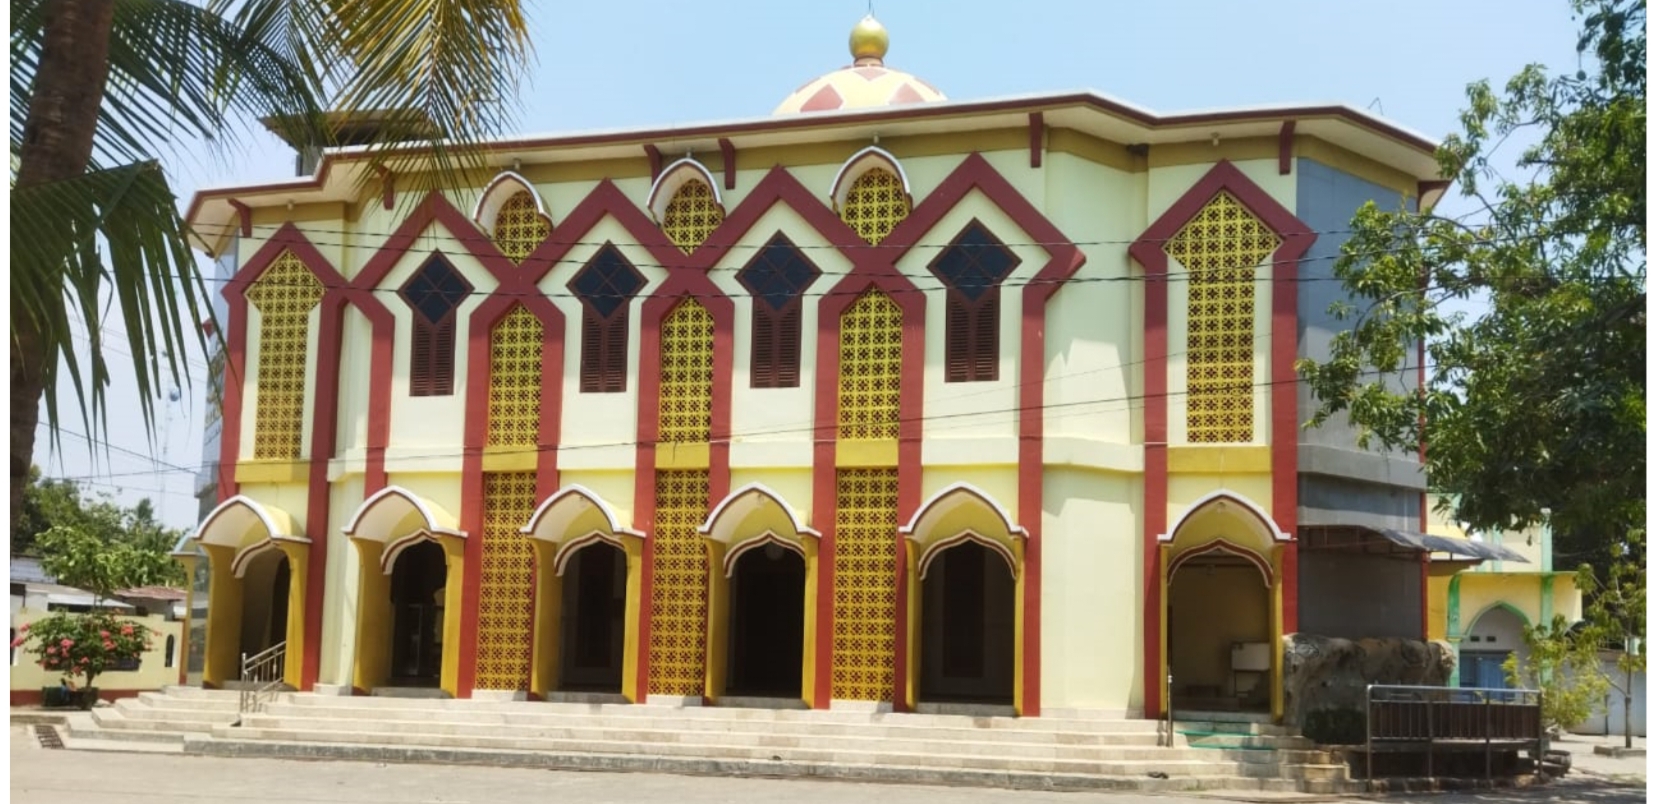 Mengenal Masjid Sabilal Huda Kembang